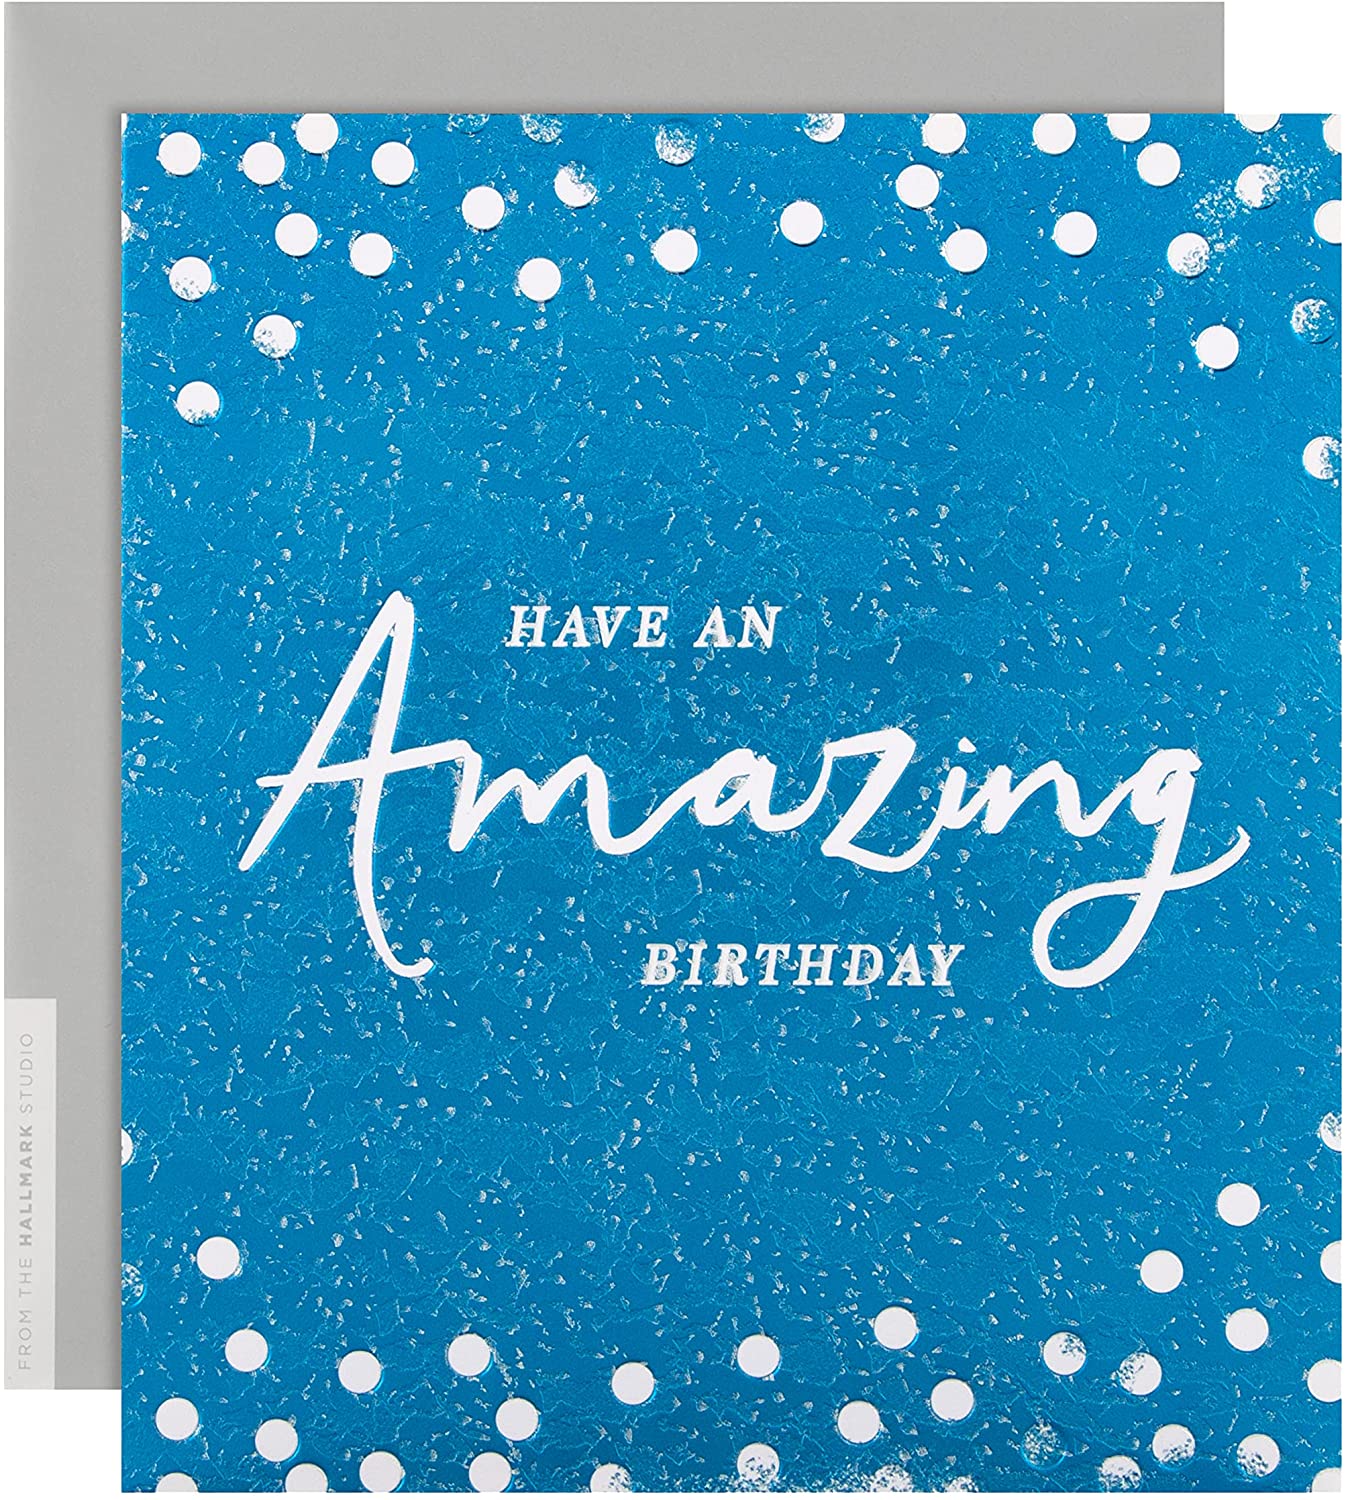 Hallmark ''Have An Amazing Birthday'' Card RRP 3.40 CLEARANCE XL 1.99